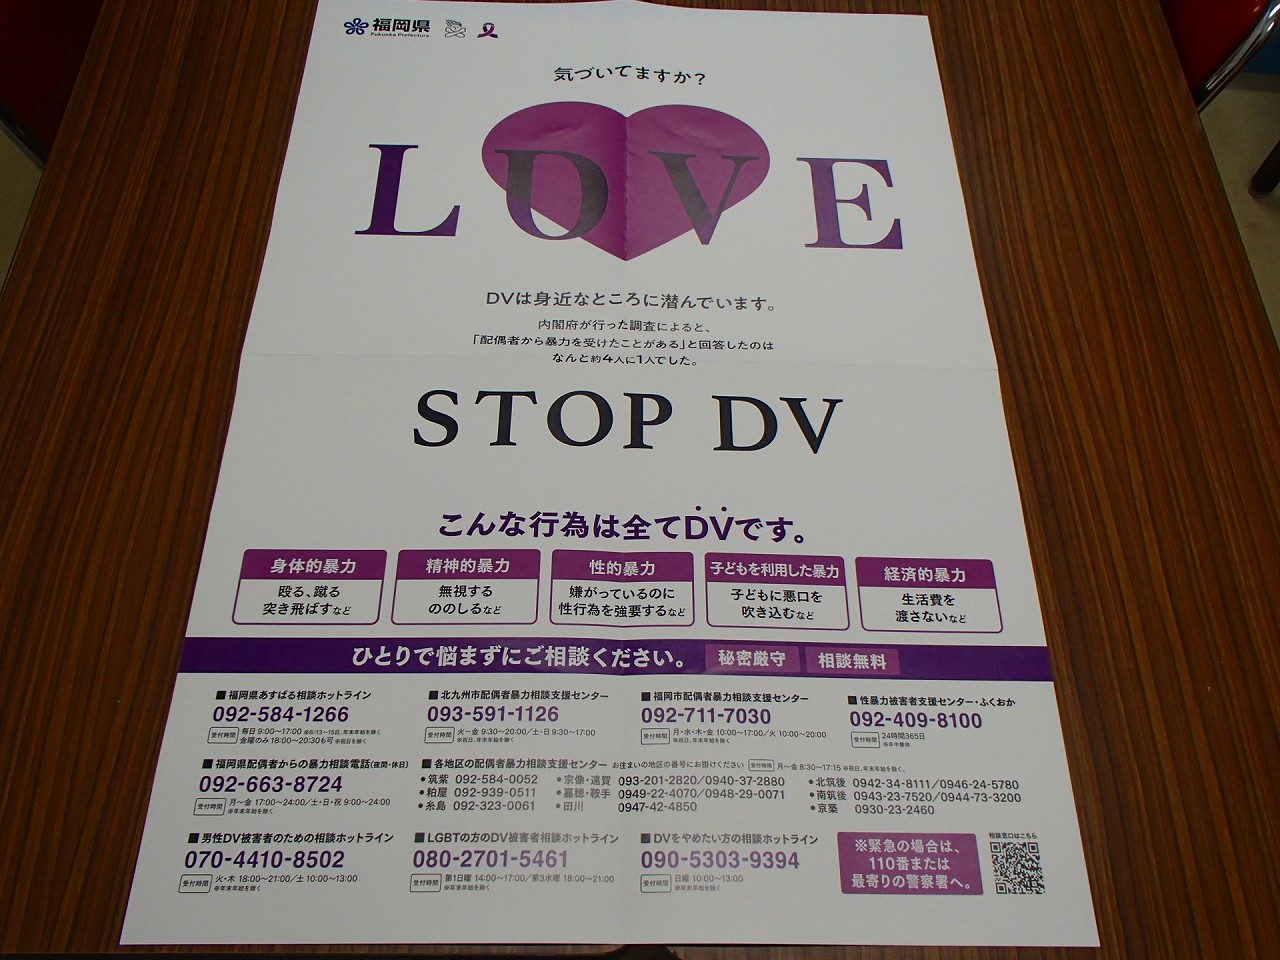 旧福岡県公会堂貴賓館「女性に対する暴力をなくす運動」ライトアップのお知らせ